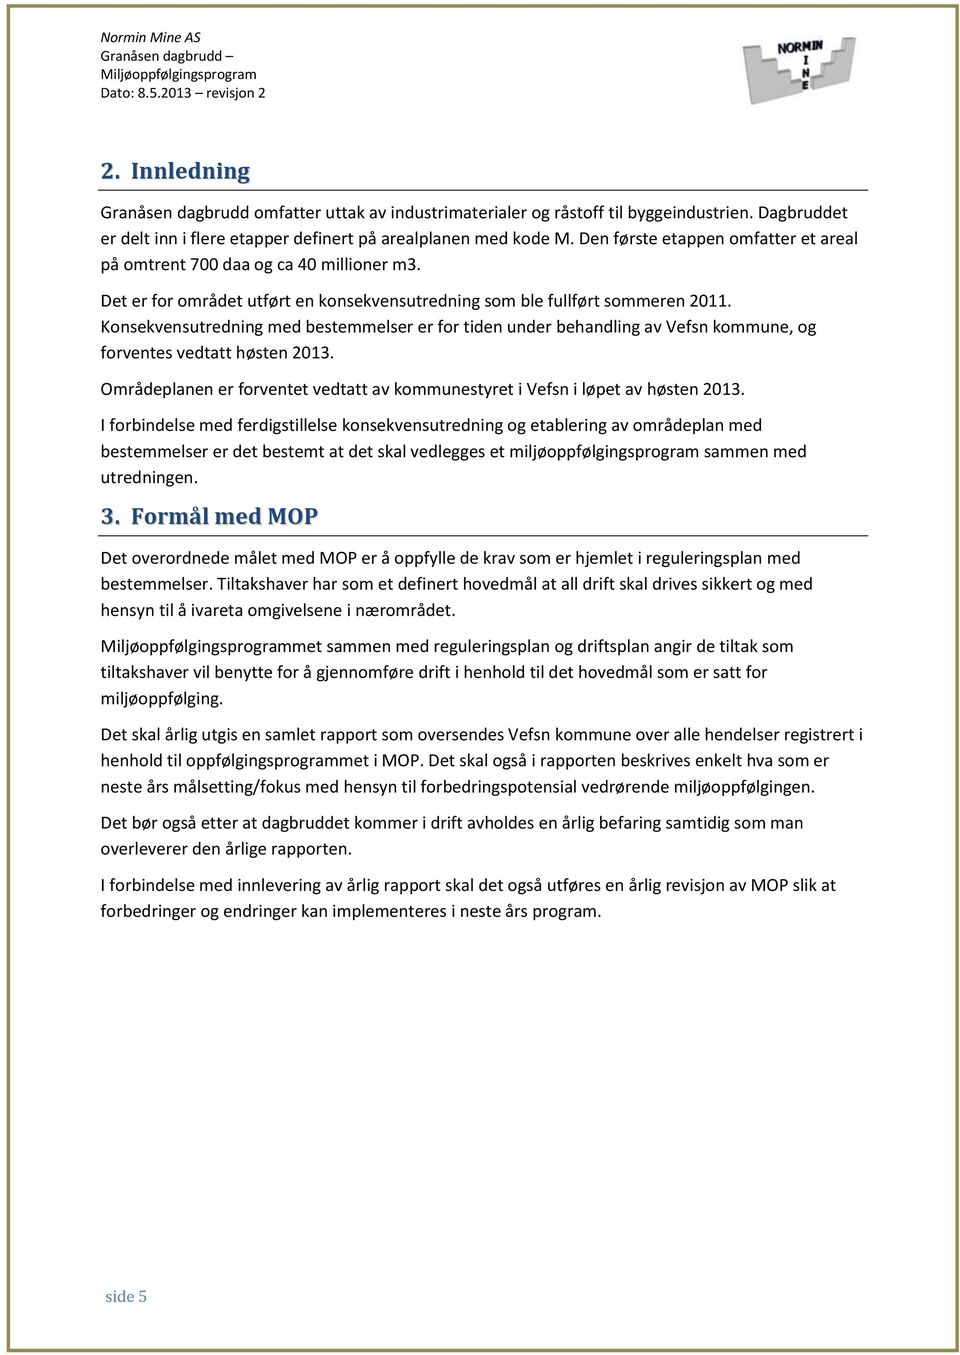 Konsekvensutredning med bestemmelser er for tiden under behandling av Vefsn kommune, og forventes vedtatt høsten 2013.